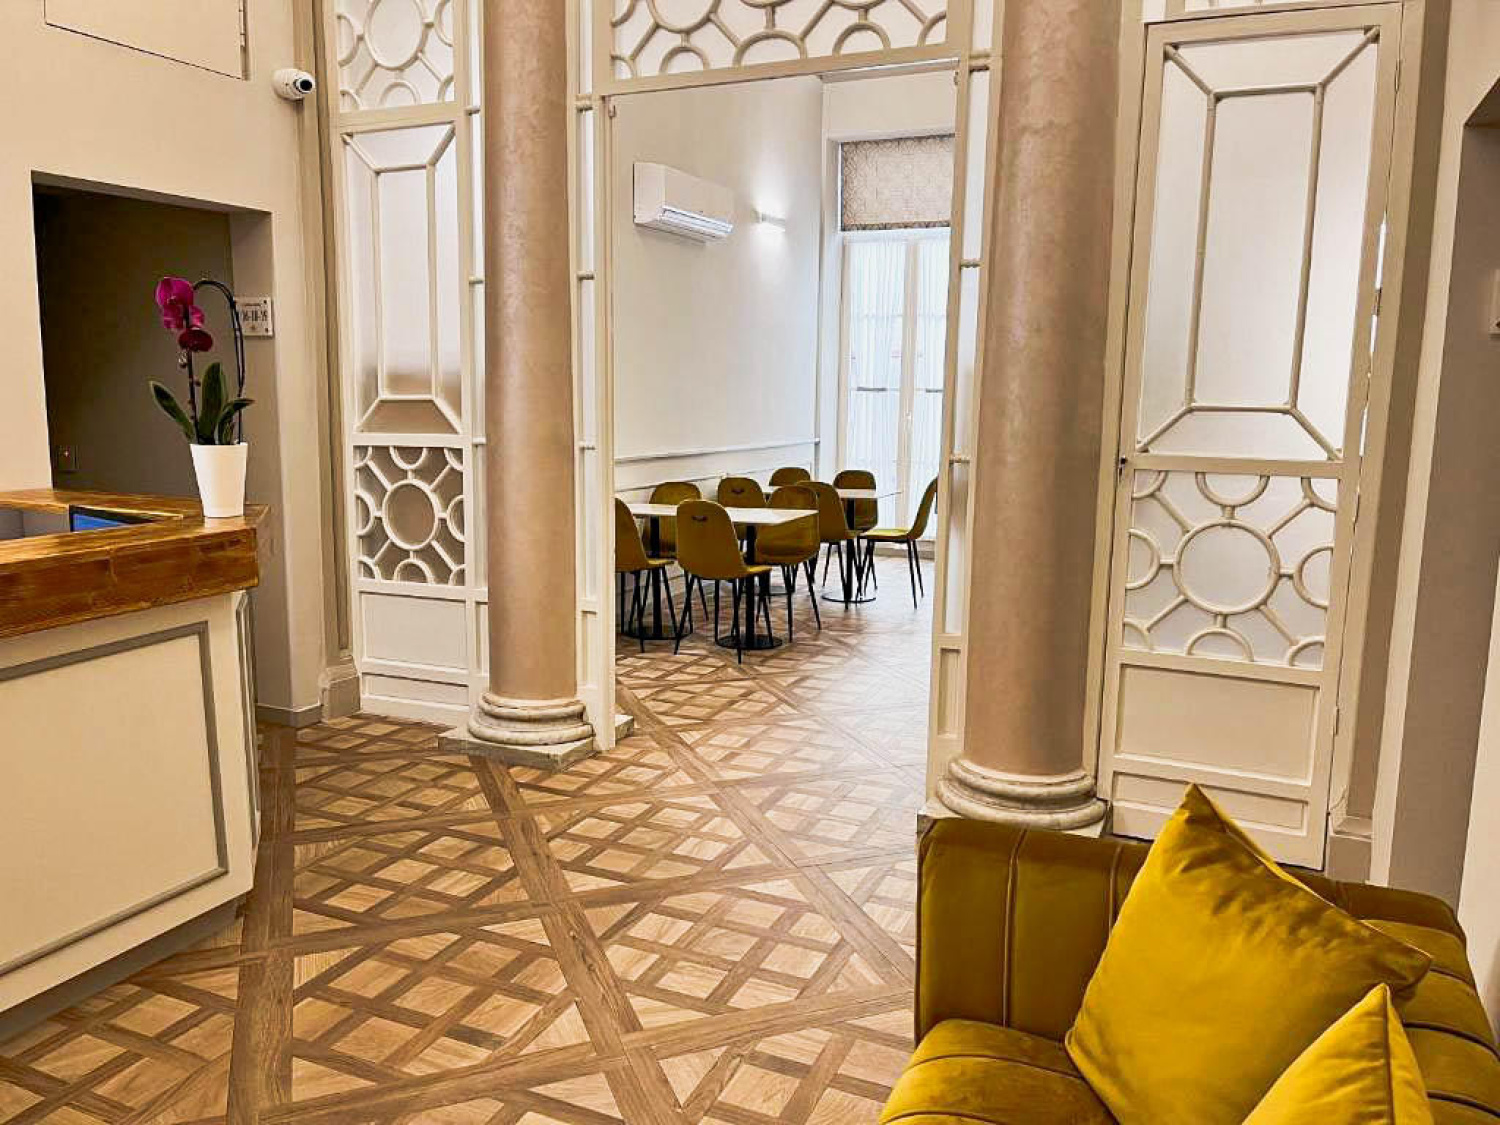 CORTE DEI SOGNI BOUTIQUE HOTEL IN FLORENZ - IBFOR - Your design shop